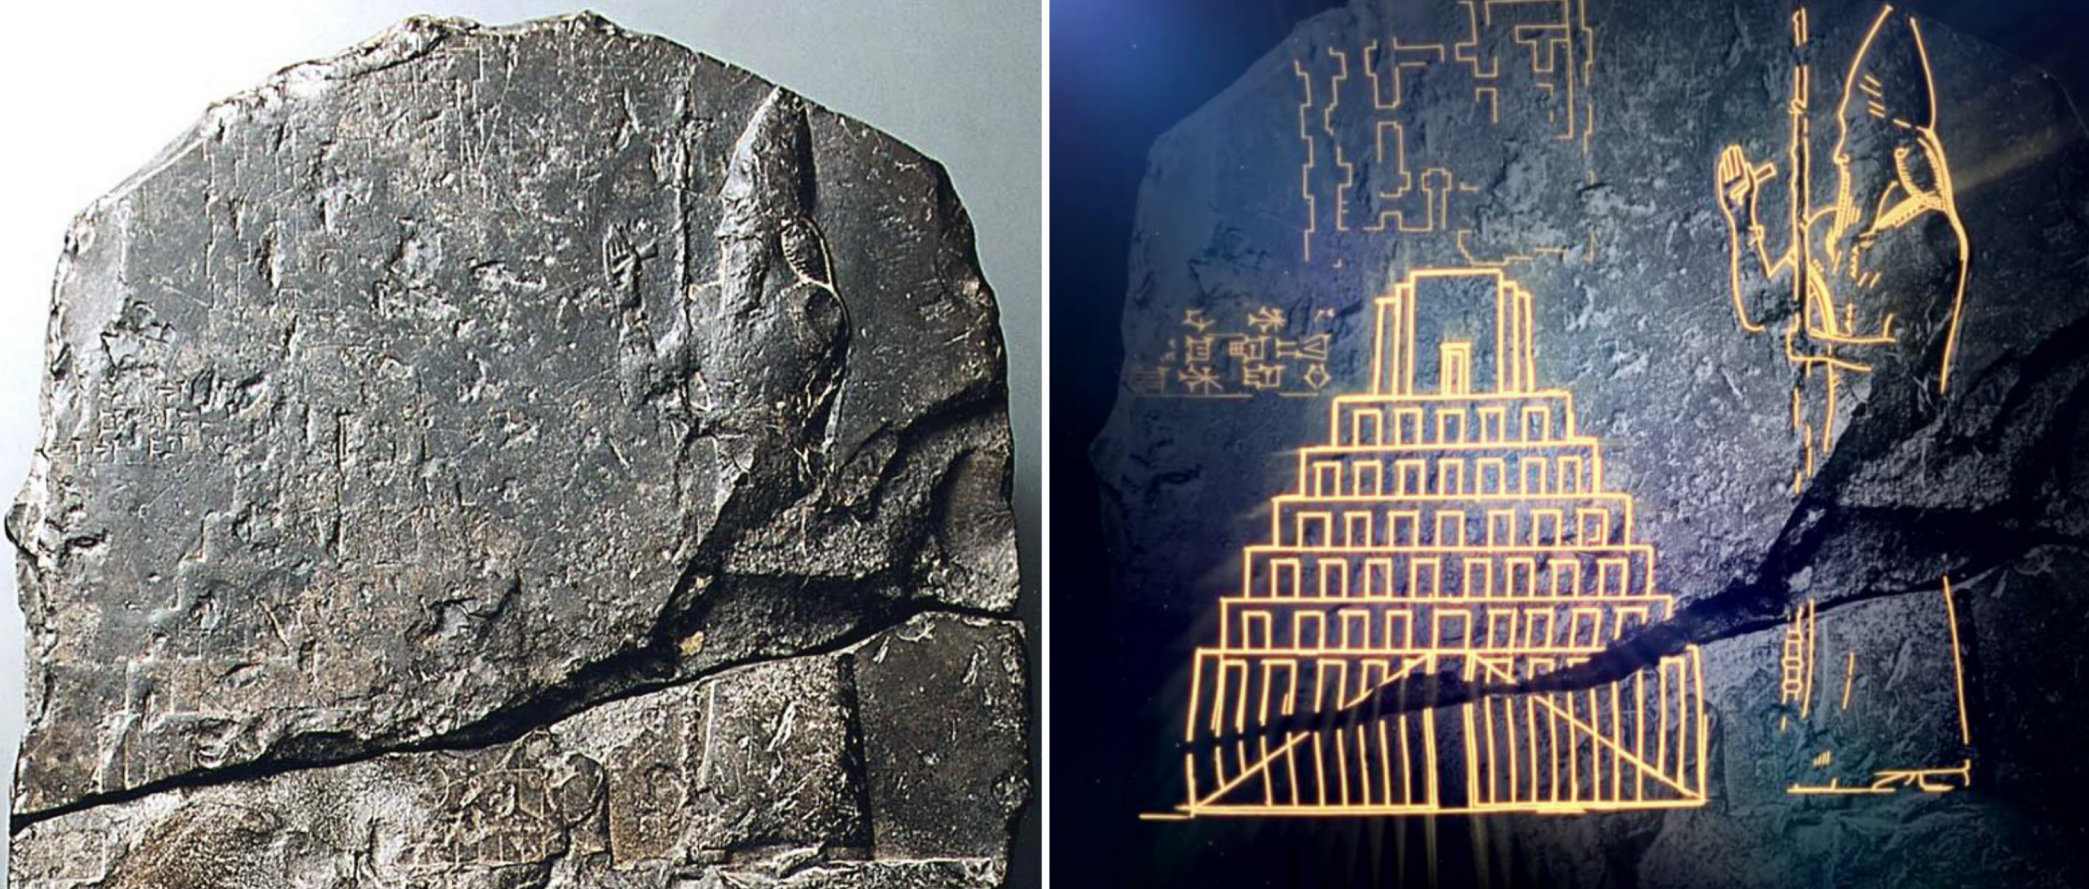 Erster Beweis für den biblischen Turmbau zu Babel entdeckt 2